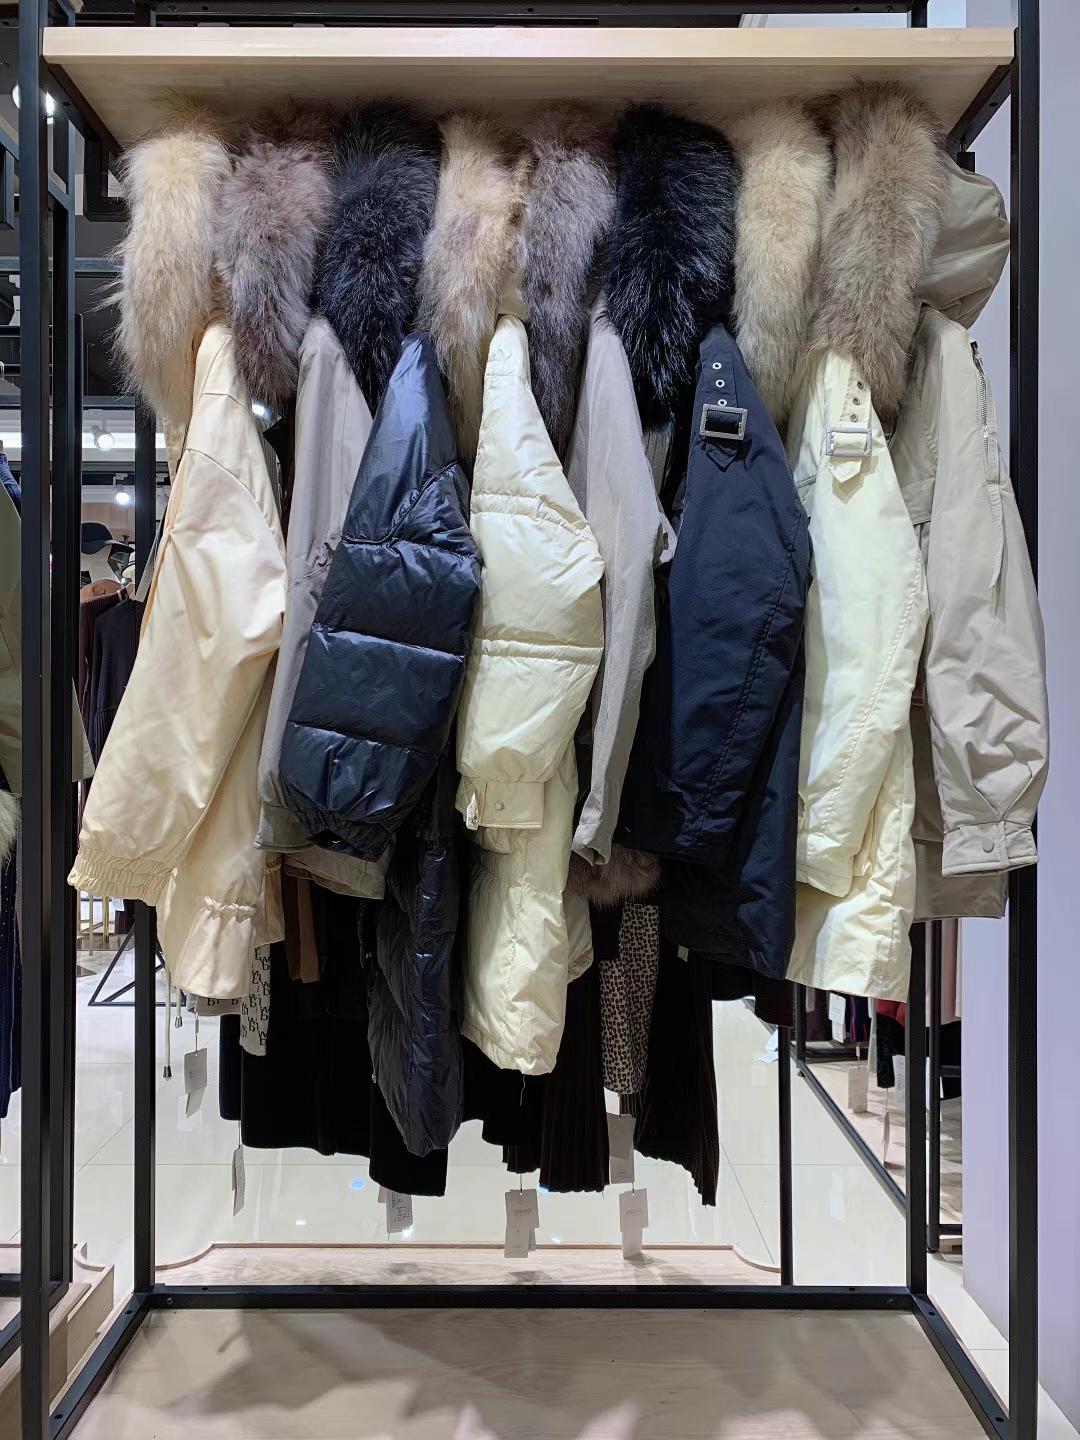 摩卡素2021冬当新新款皮草羽绒服品牌女装折扣批发供应商